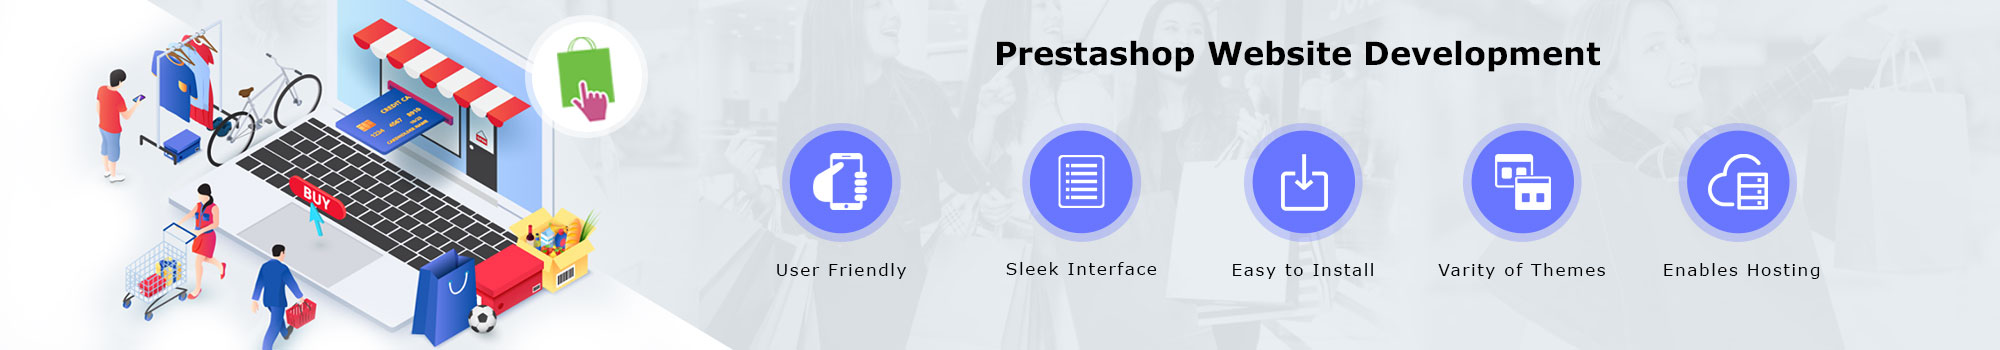 Prestashop Website Development Services